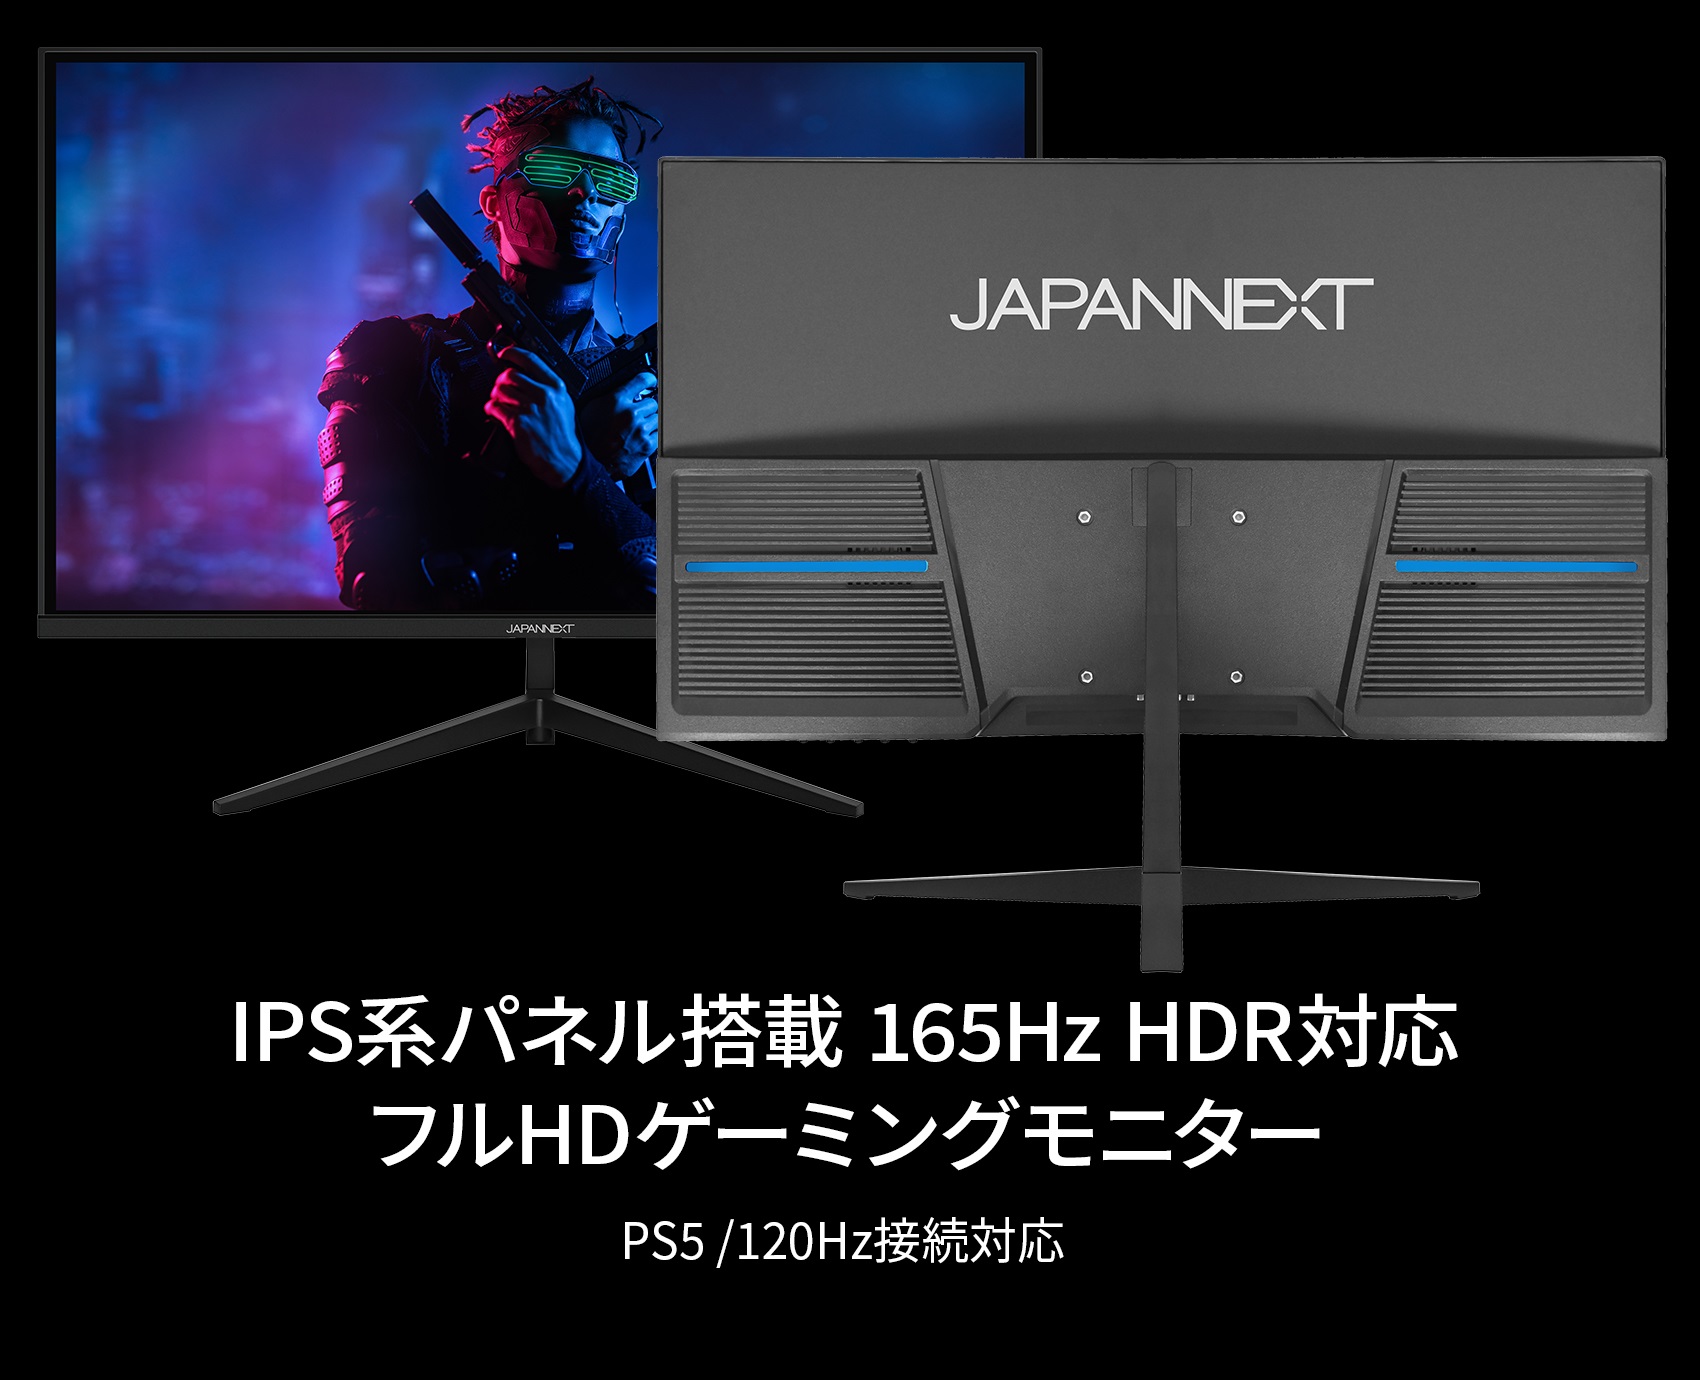 JAPANNEXT「JN-IPS238FHDR165TMC」 23.8インチ IPSパネル搭載165Hz対応 